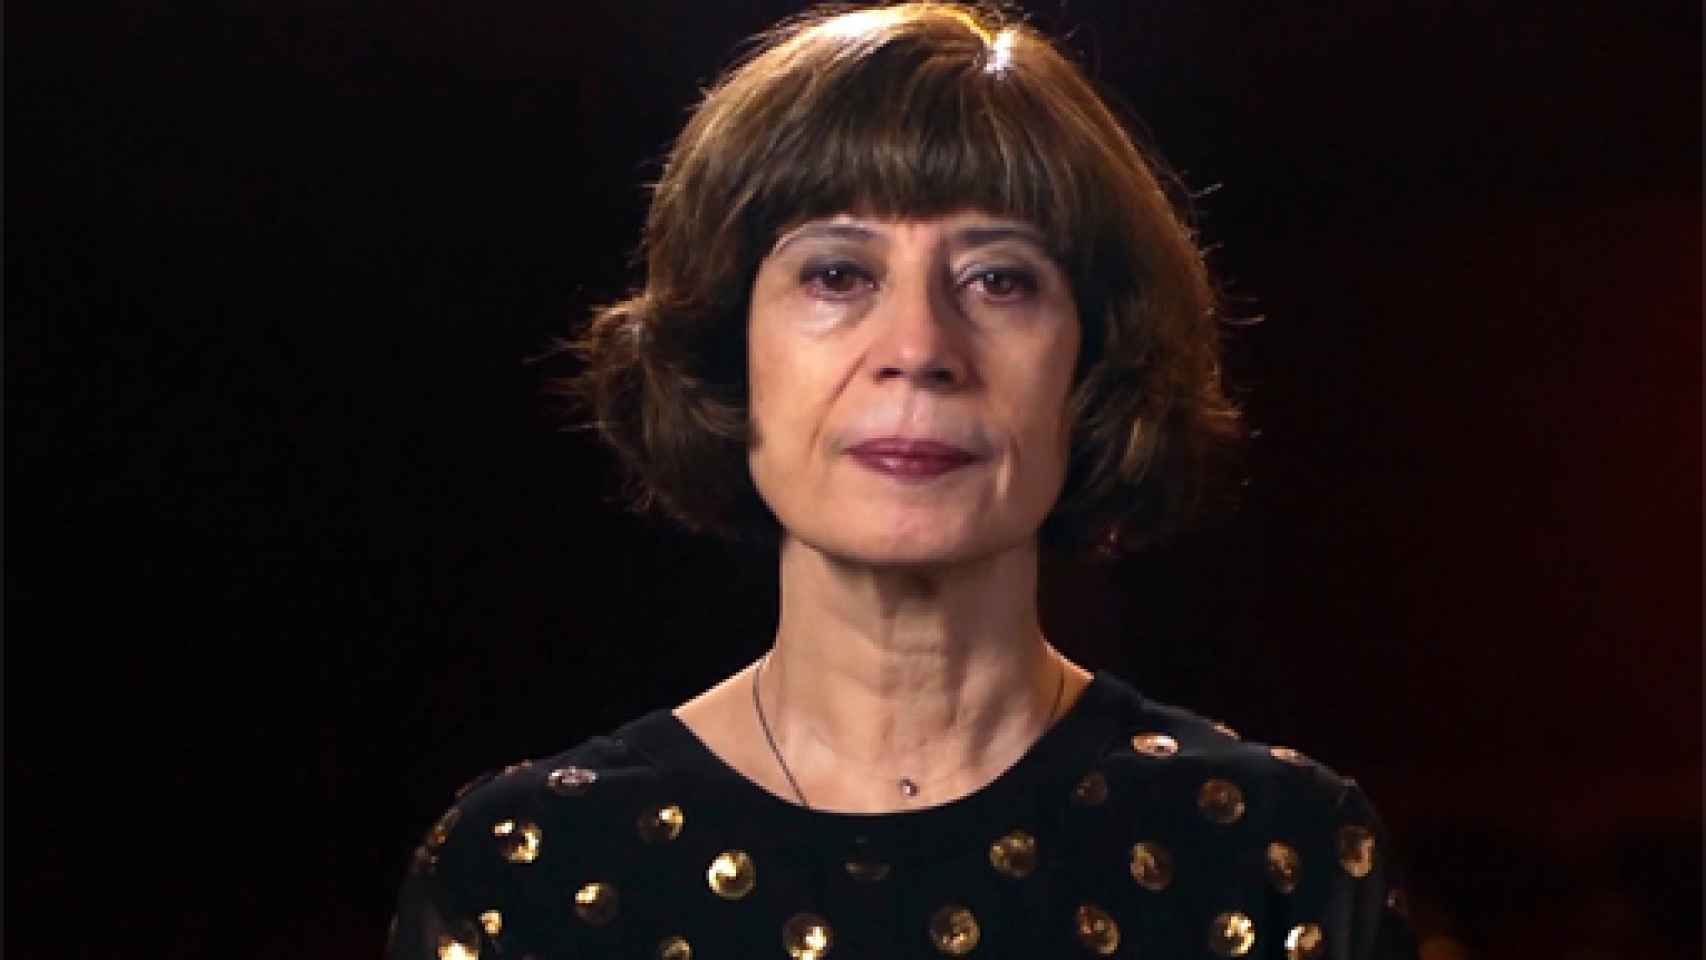 Image: Yolanda García Serrano, Premio Nacional de Literatura Dramática 2018